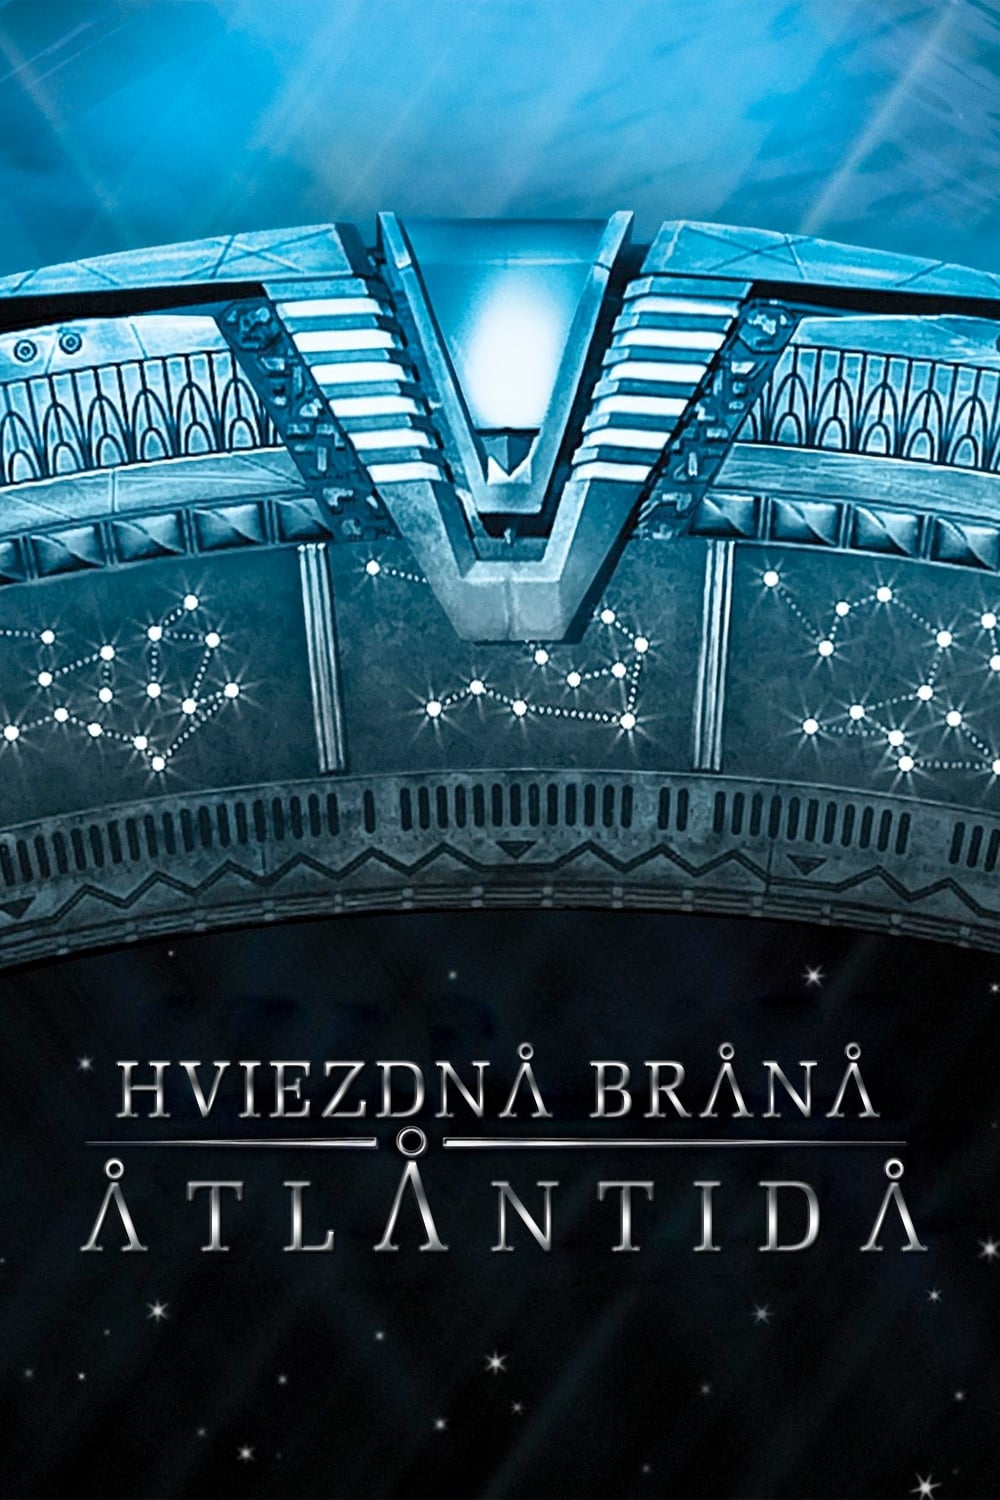 Plakát pro film “Hvězdná brána: Atlantida”